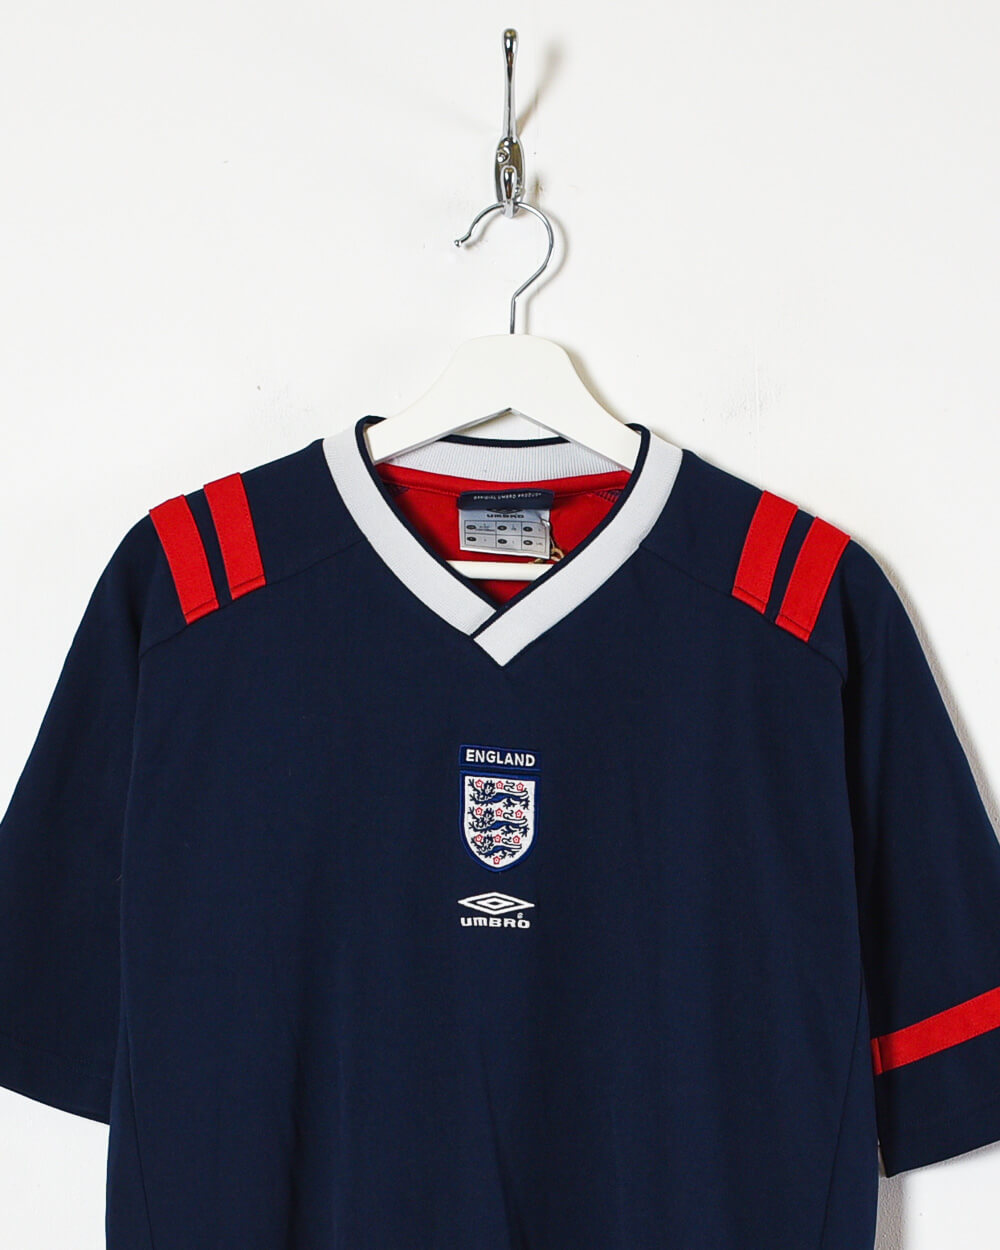 Navy Umbro England 2004/05 Training Football Shirt - Large